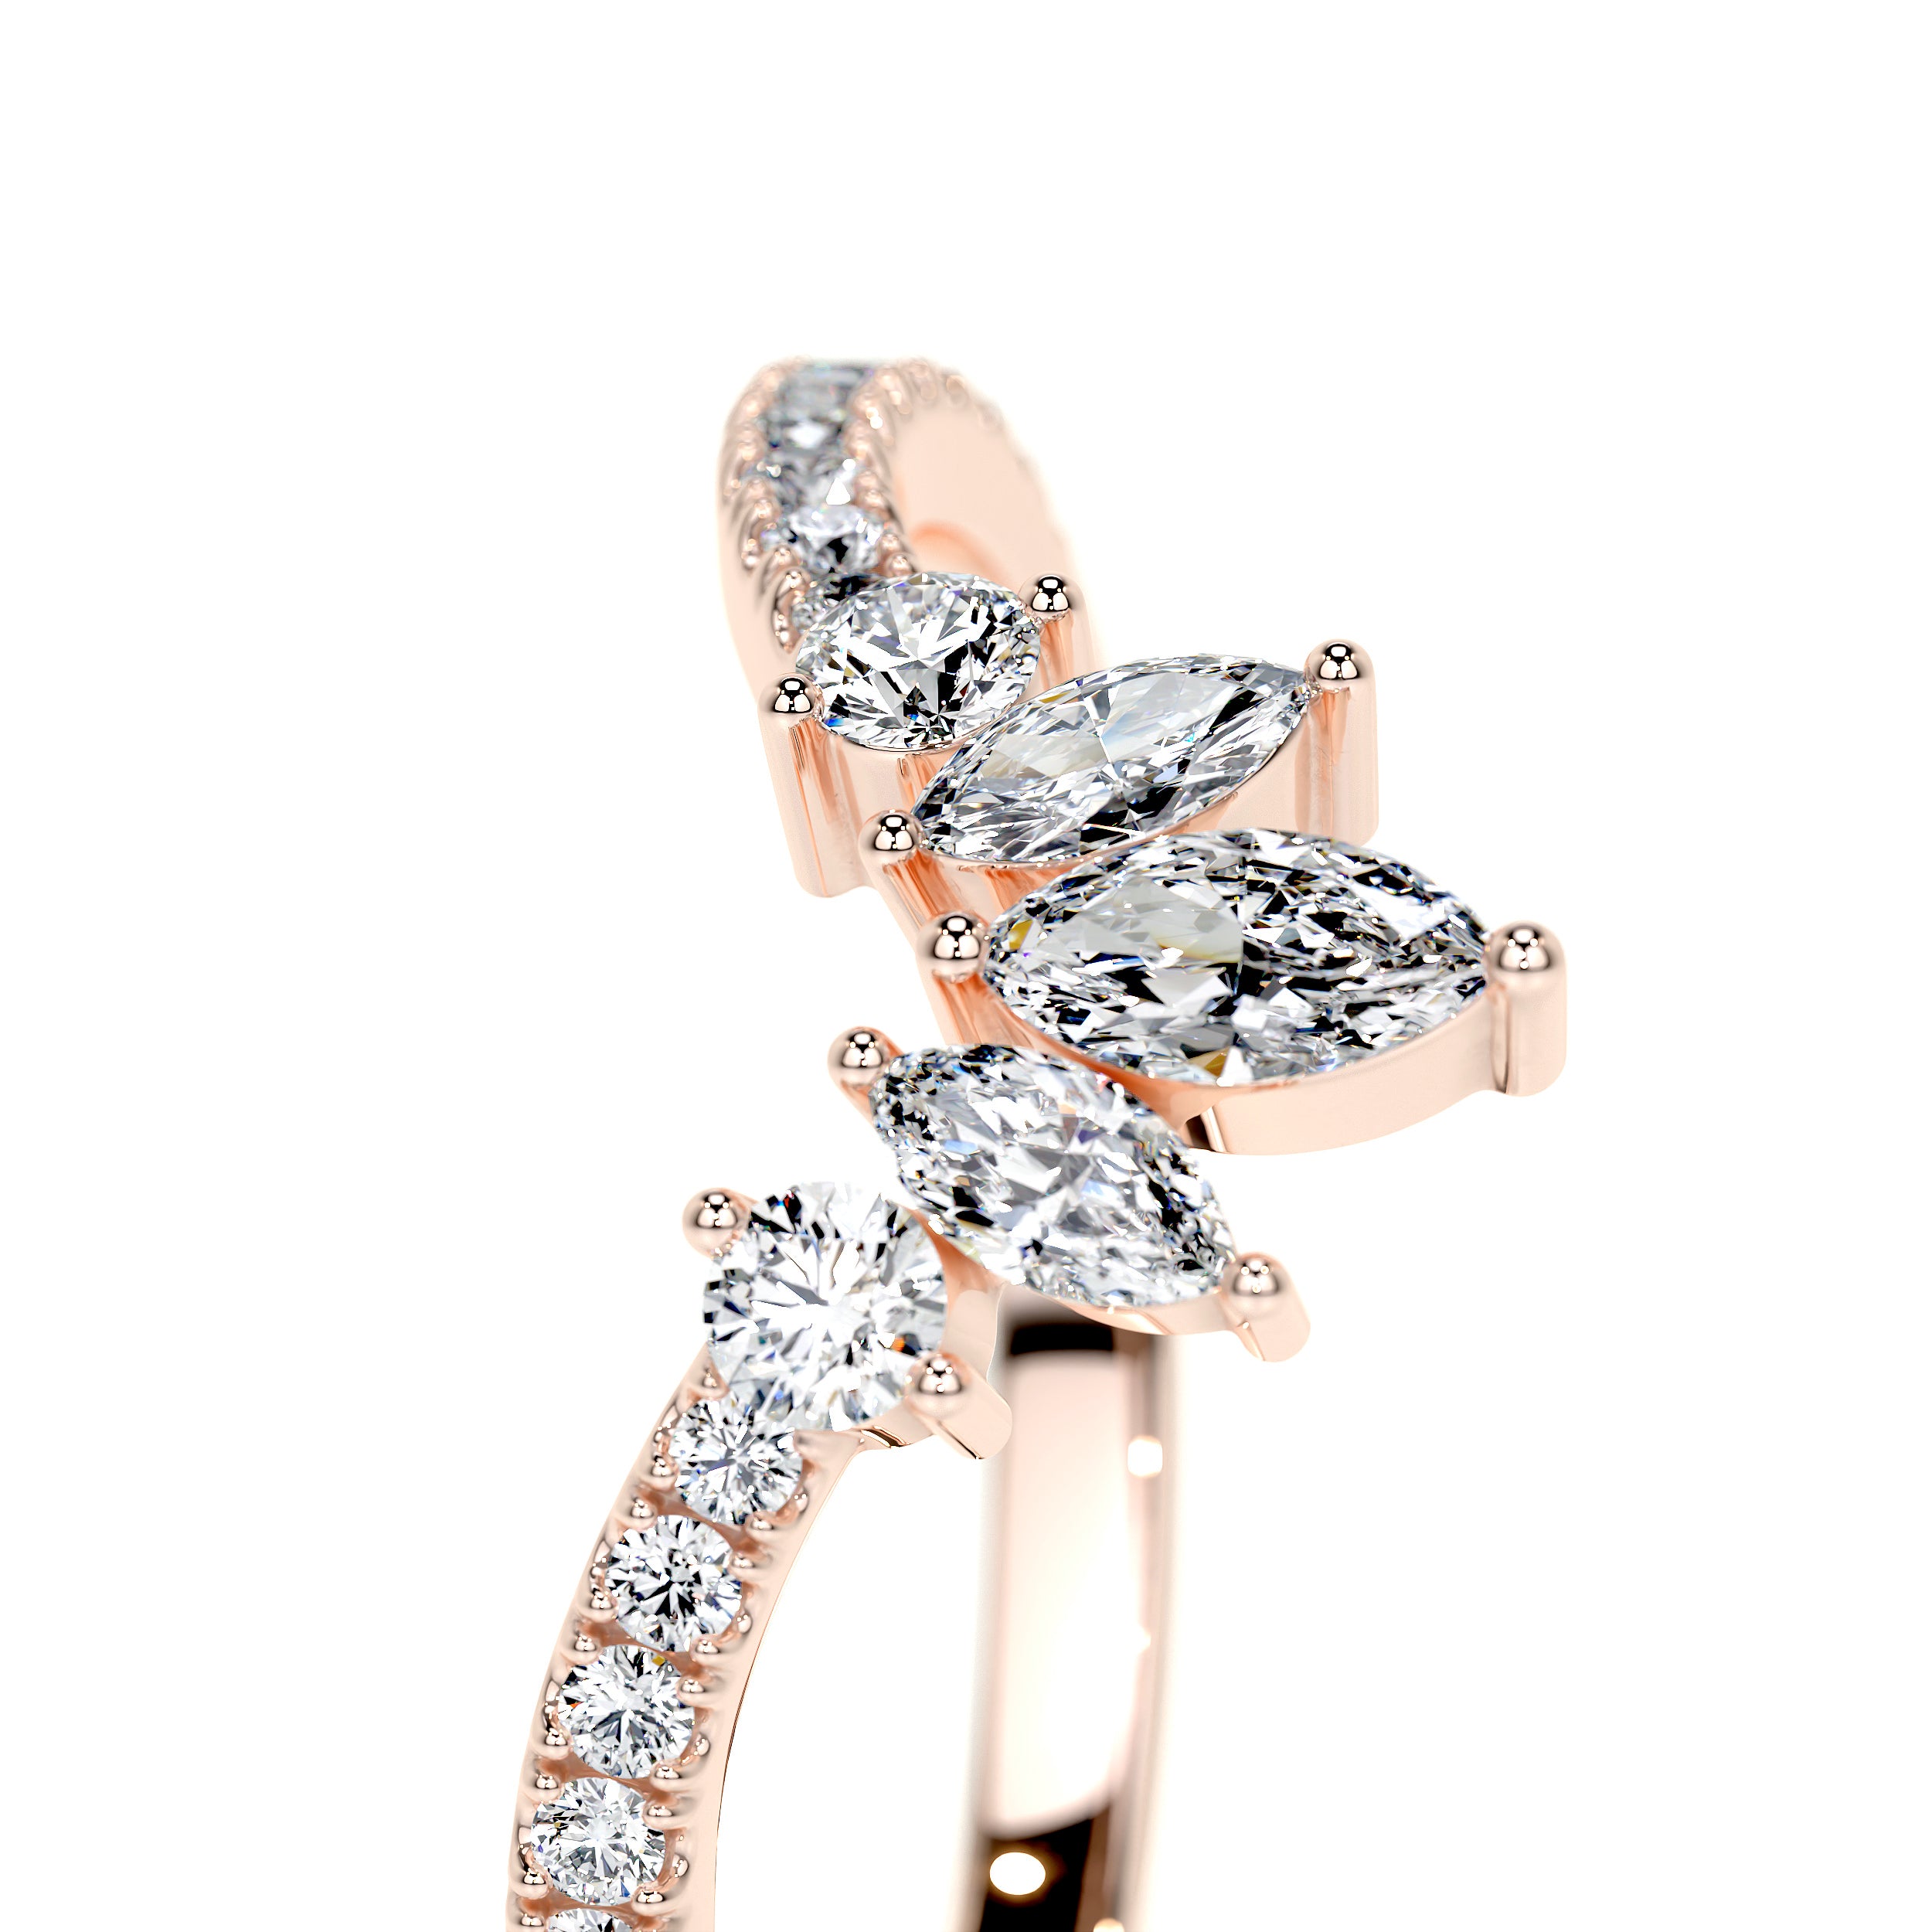 Lauren Lab Grown Diamond Wedding Ring   (0.30 Carat) -14K Rose Gold